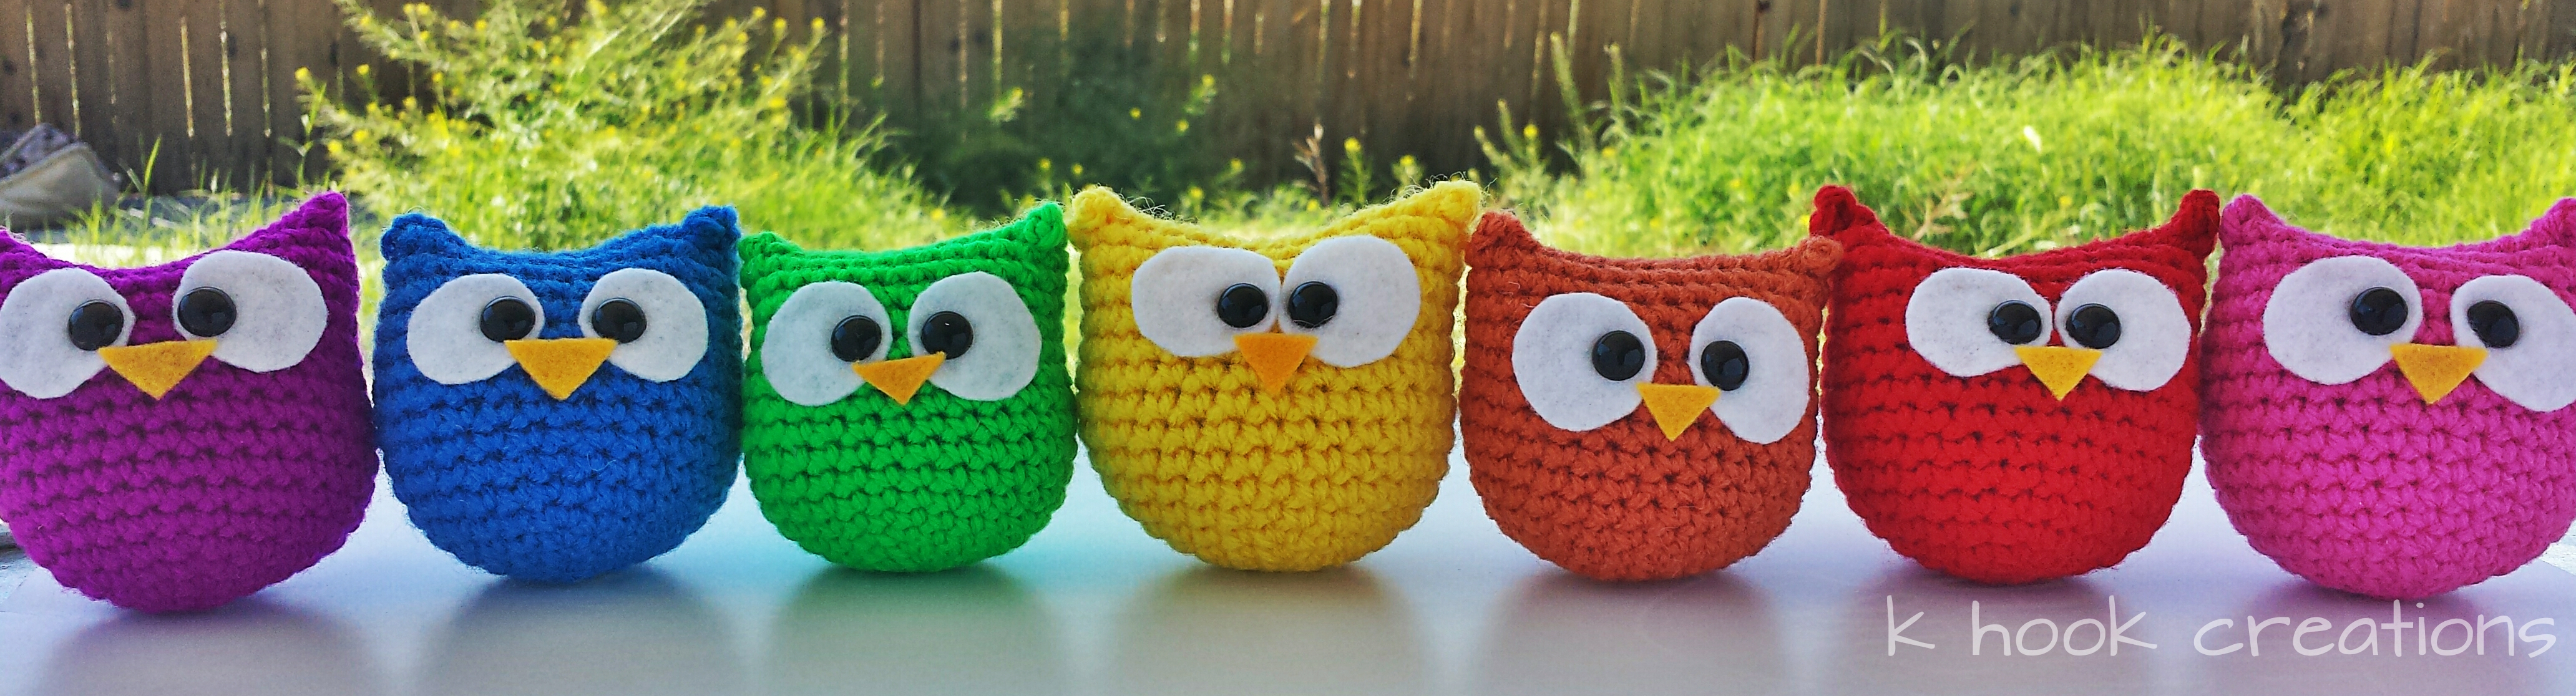 Free Owl Crochet Pattern Crochet Owl Pattern K Hook Creations